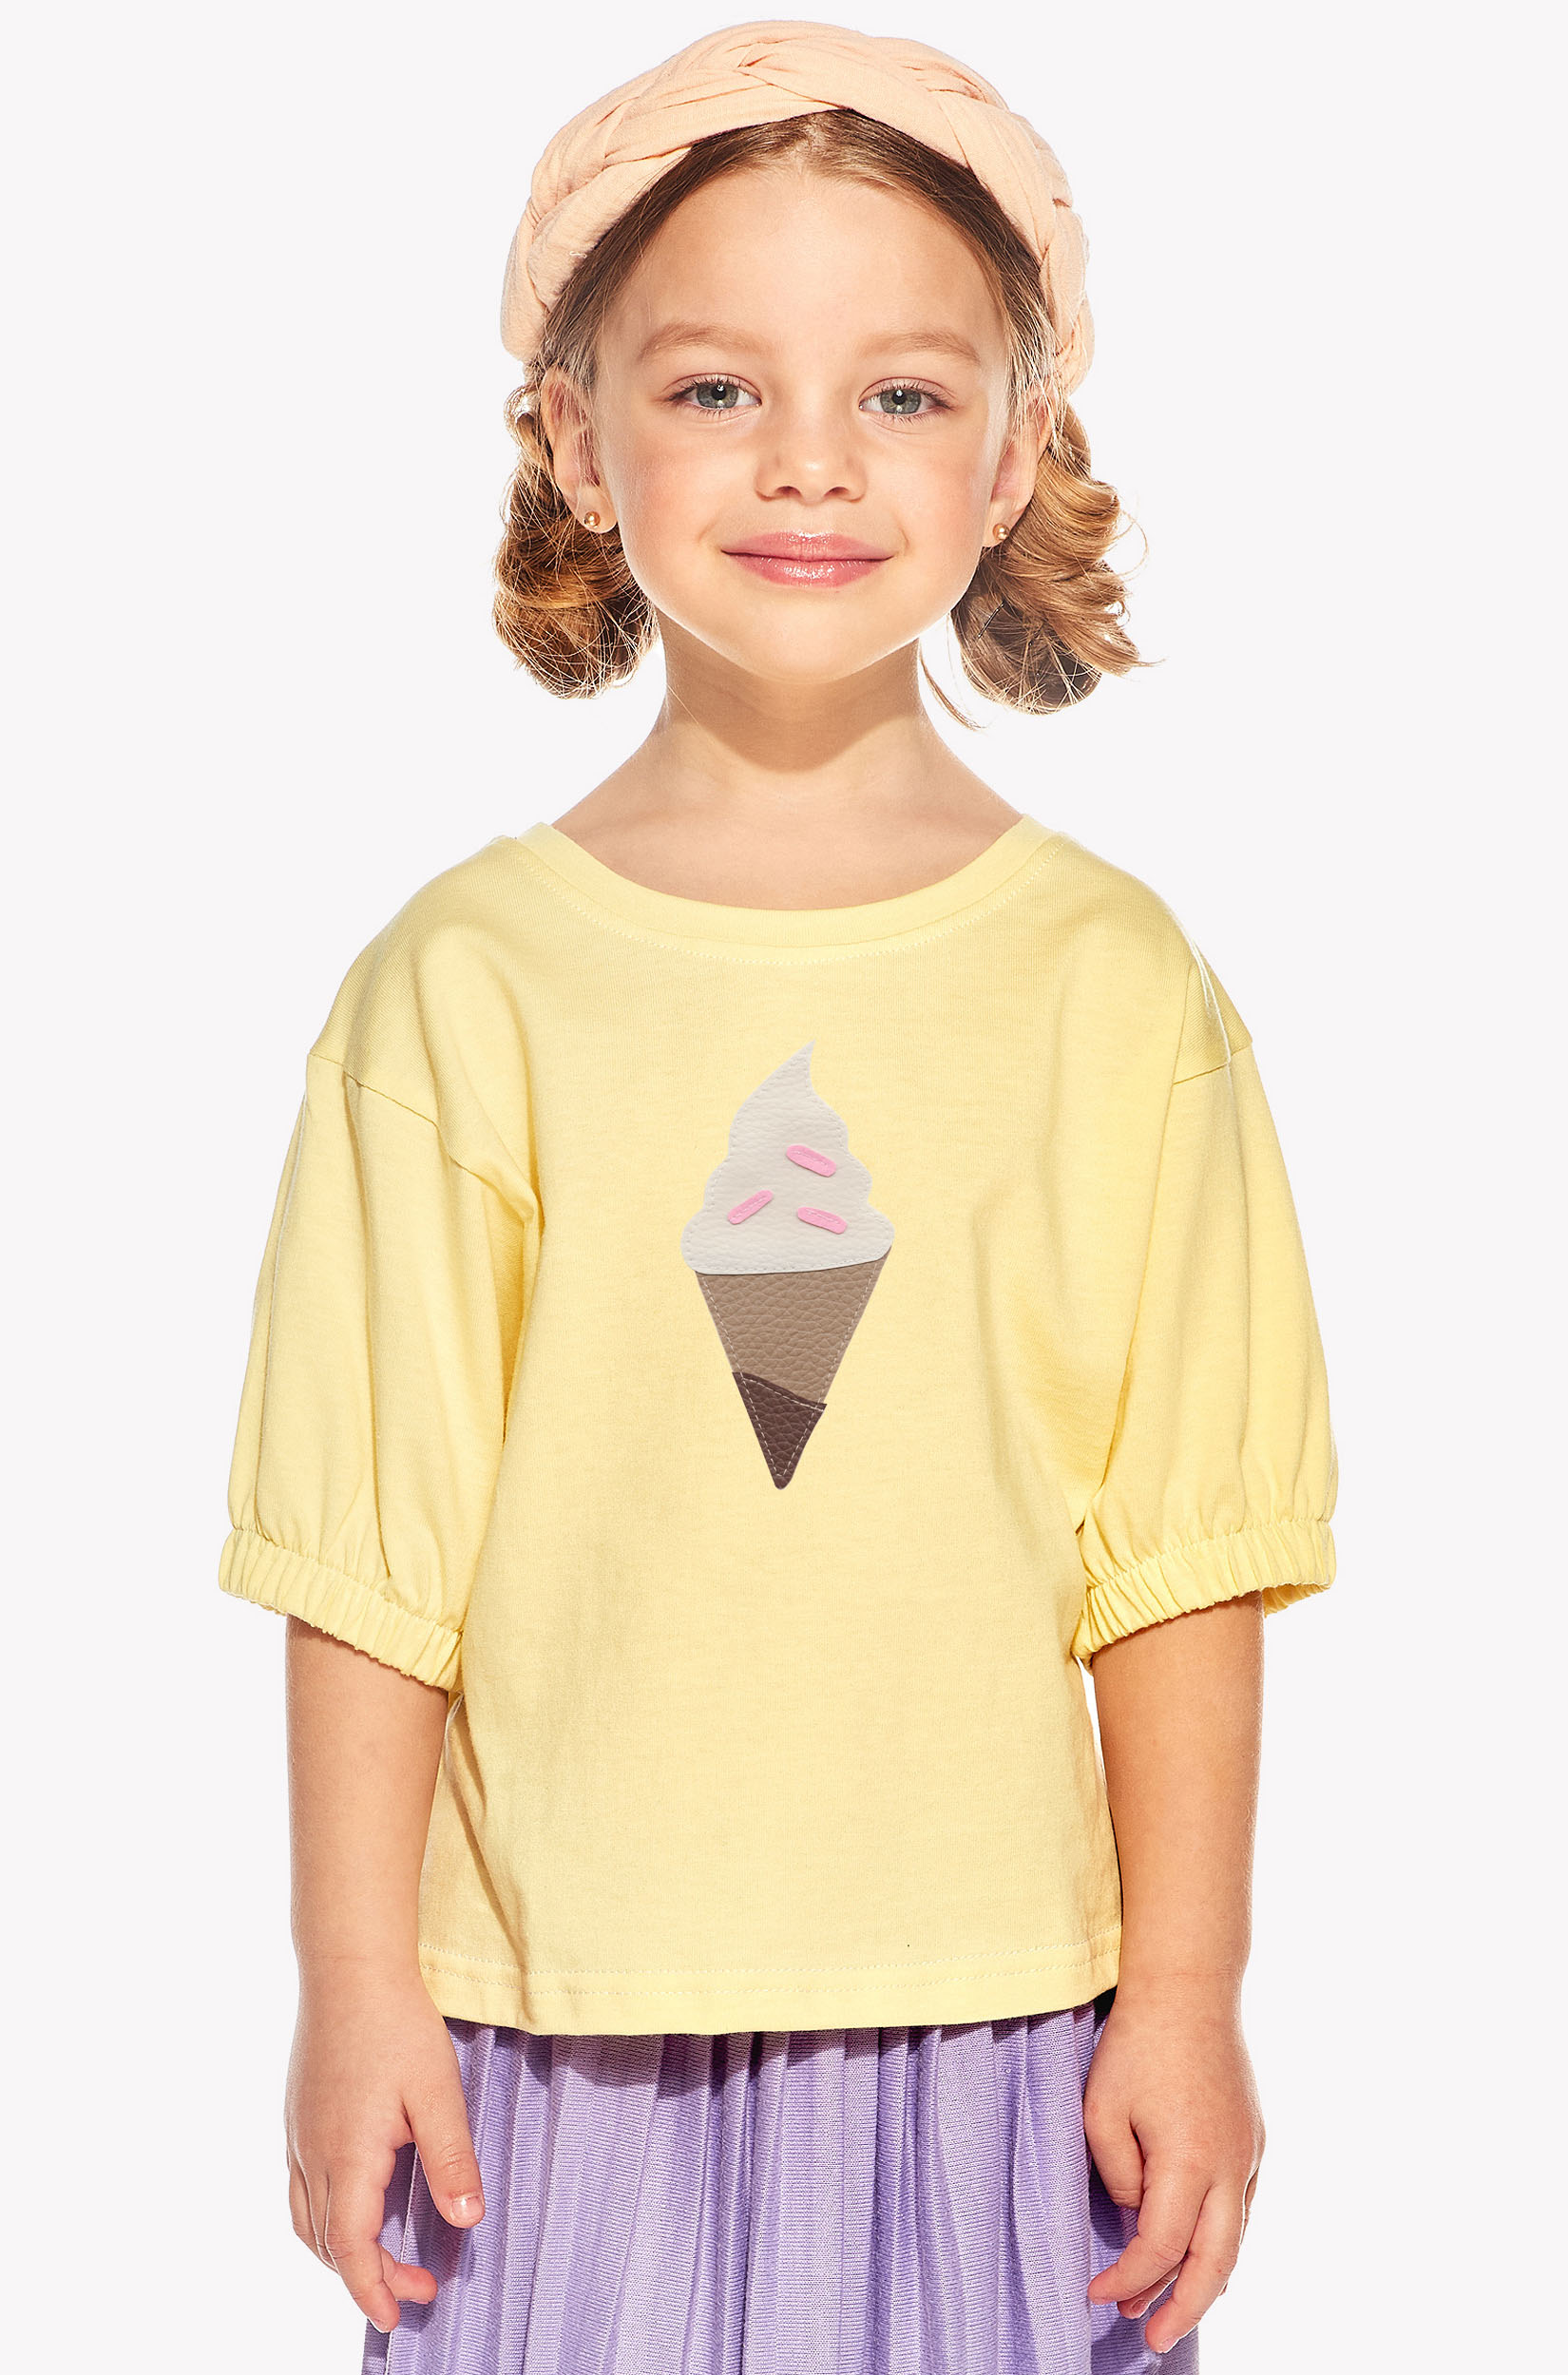 Tričko so zmrzlinou